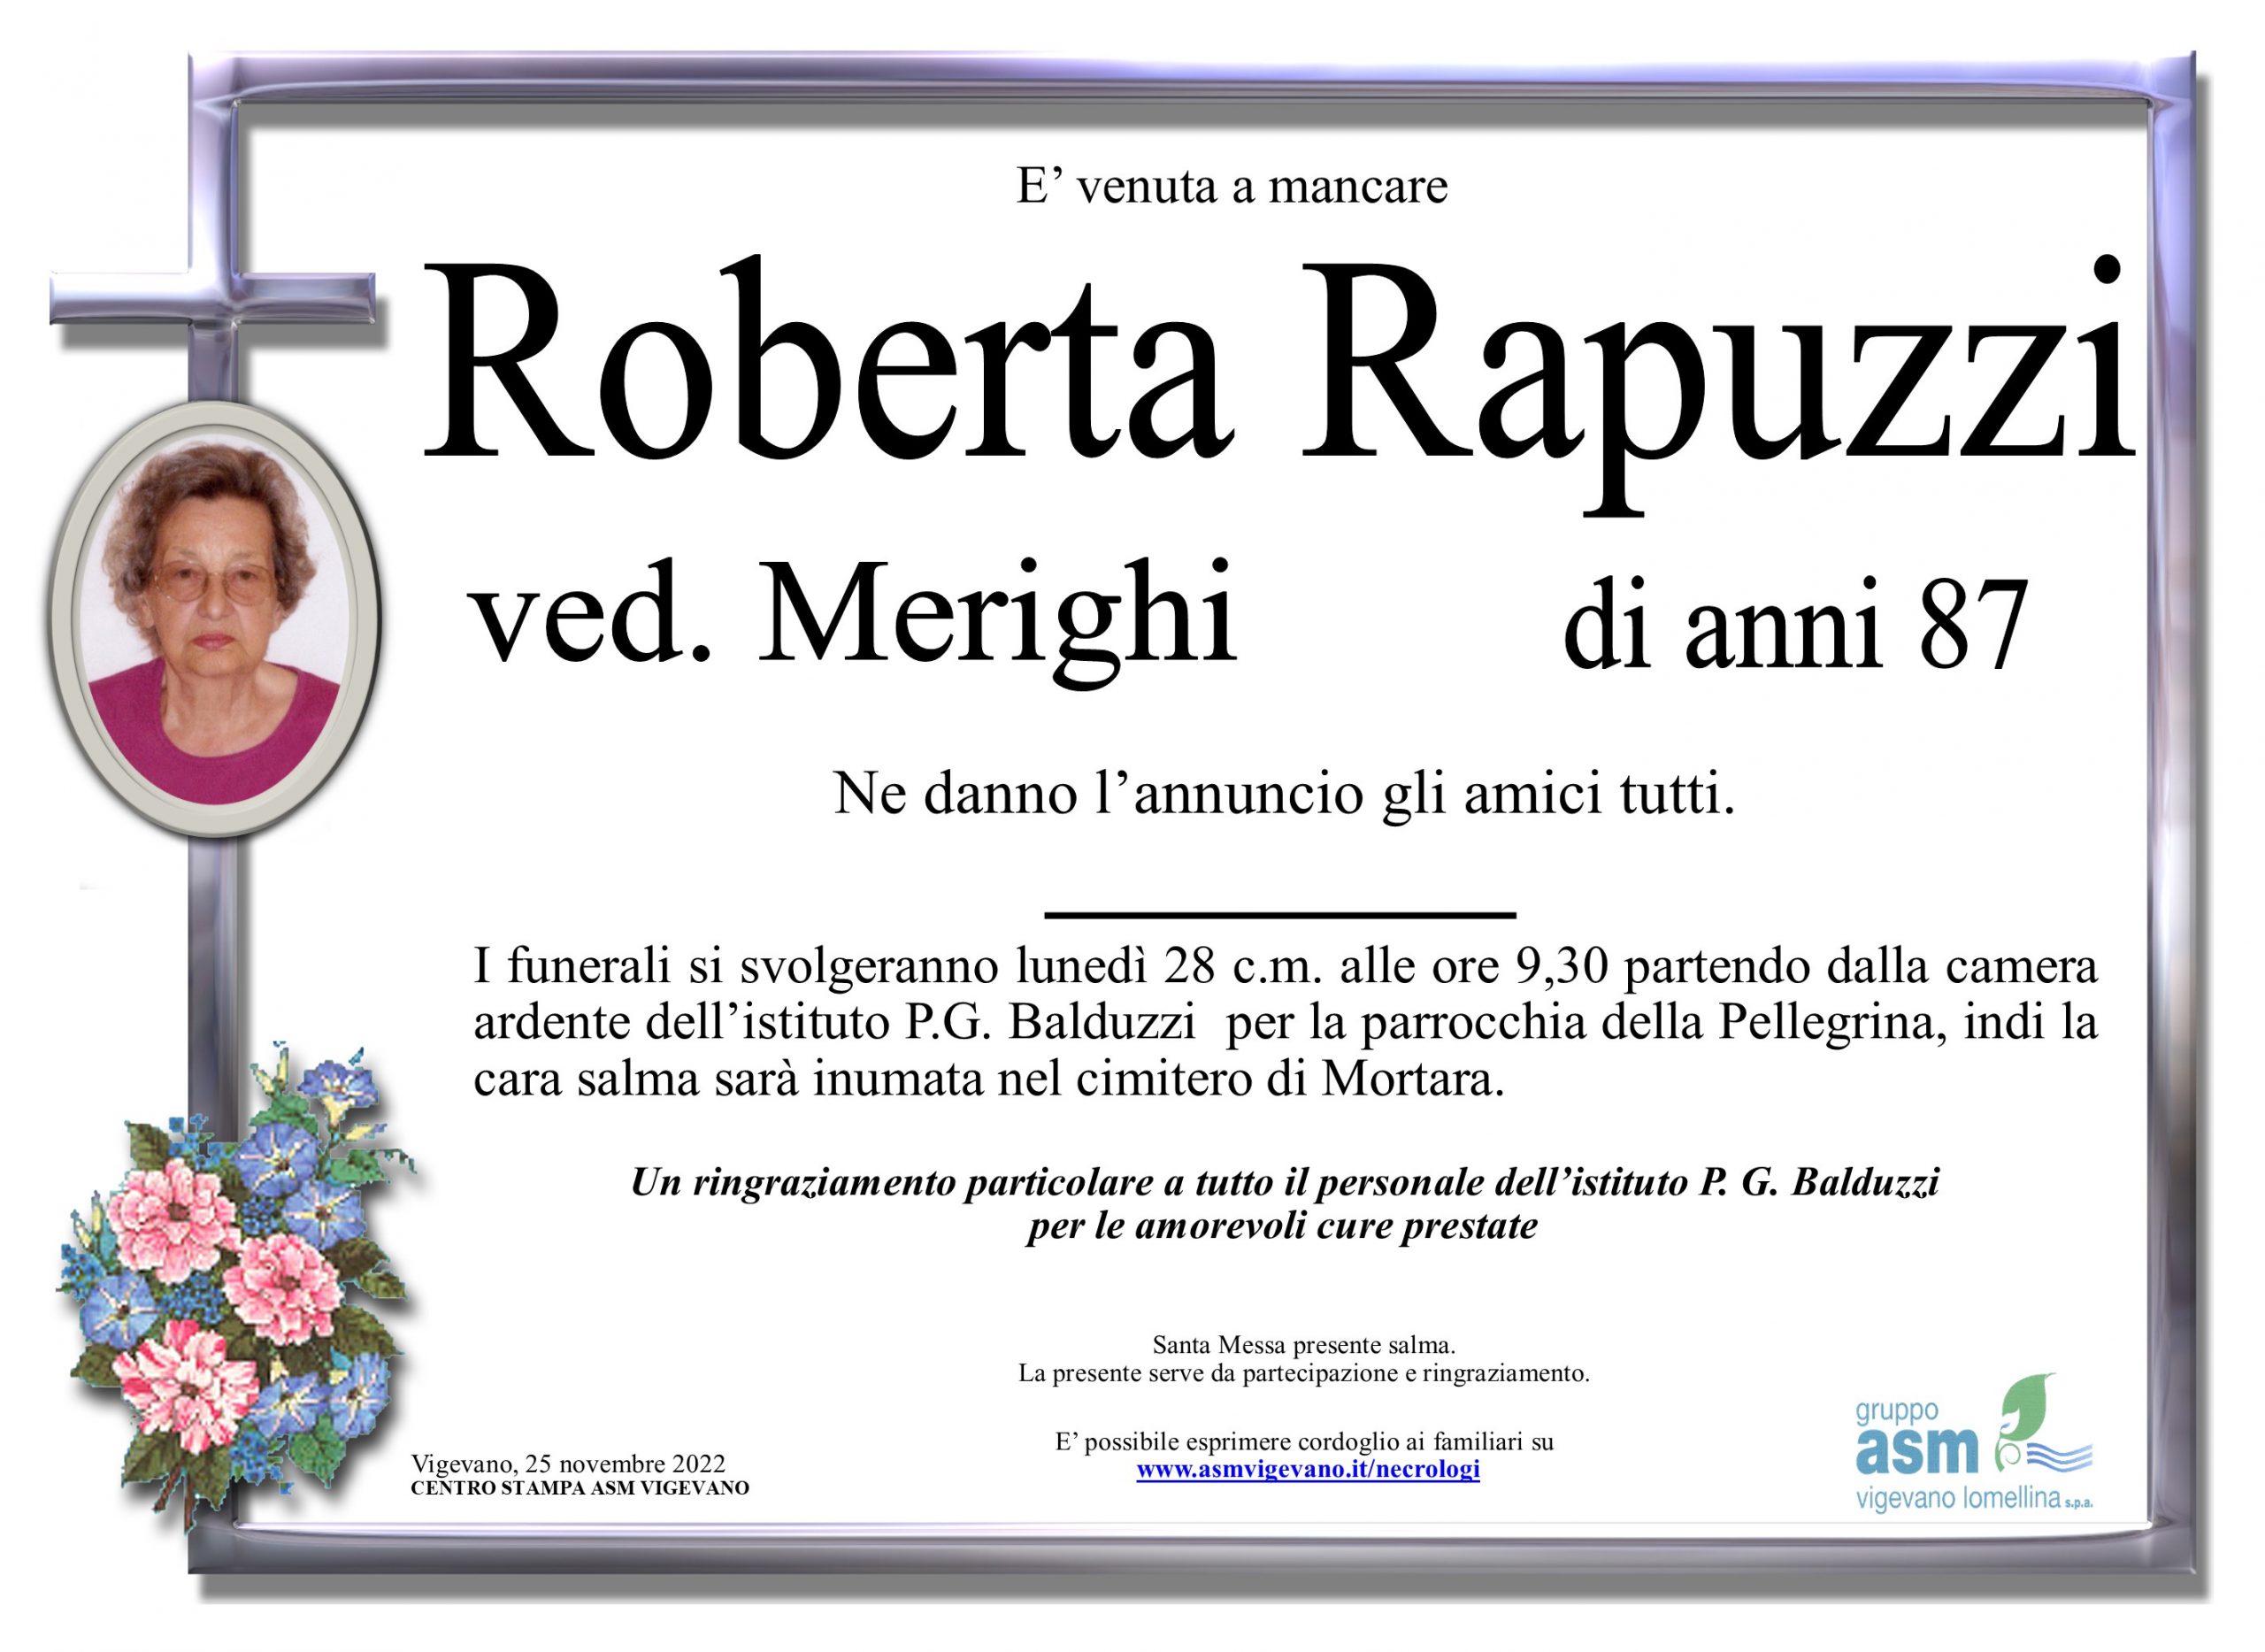 Roberta Rapuzzi